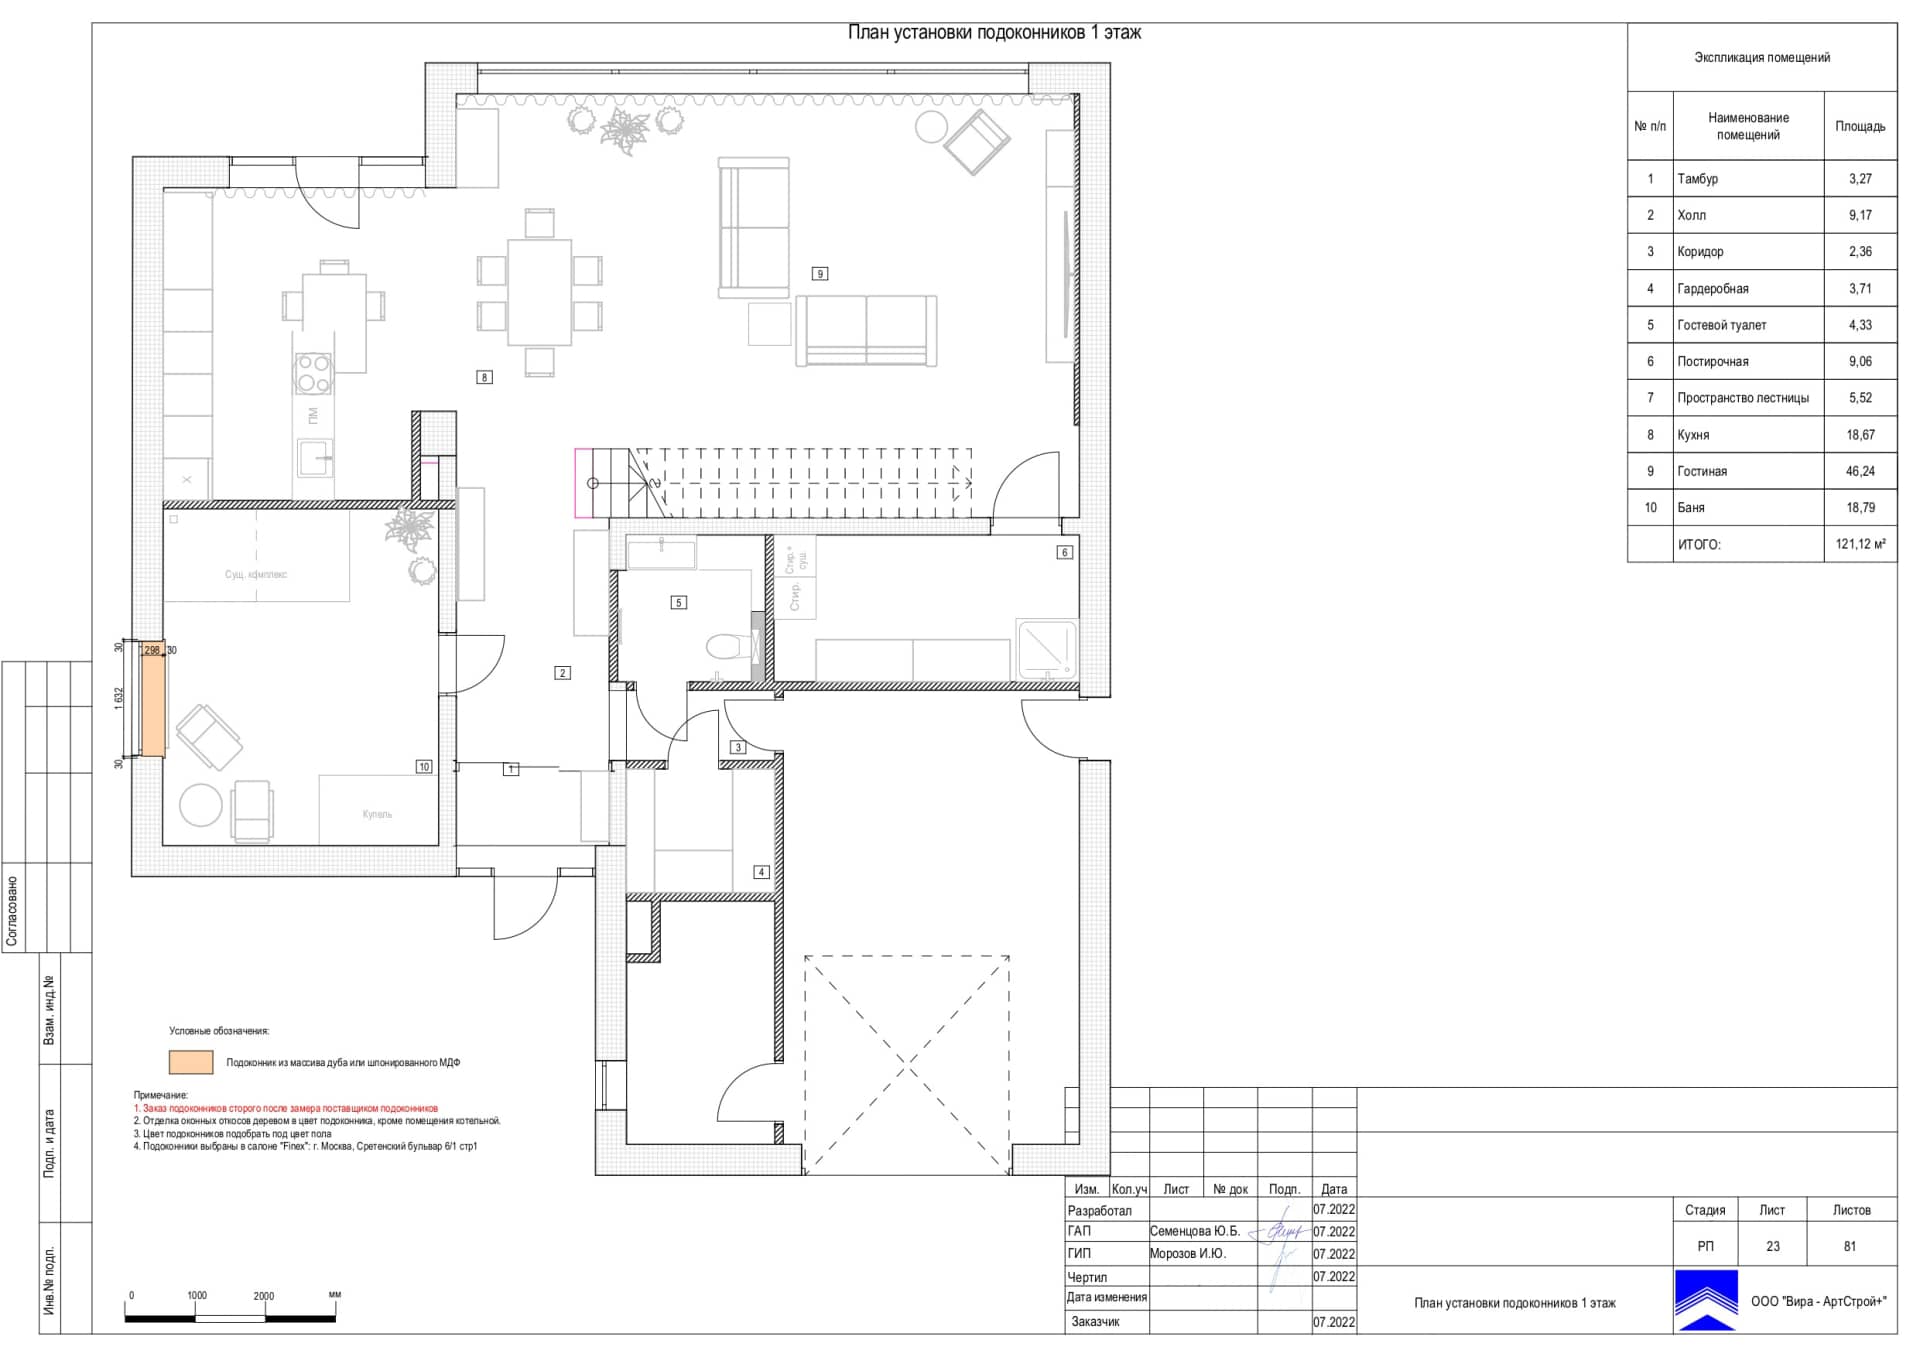 План установки подоконников 1 таж, дом 265 м² в КП «Новогорск Клаб»